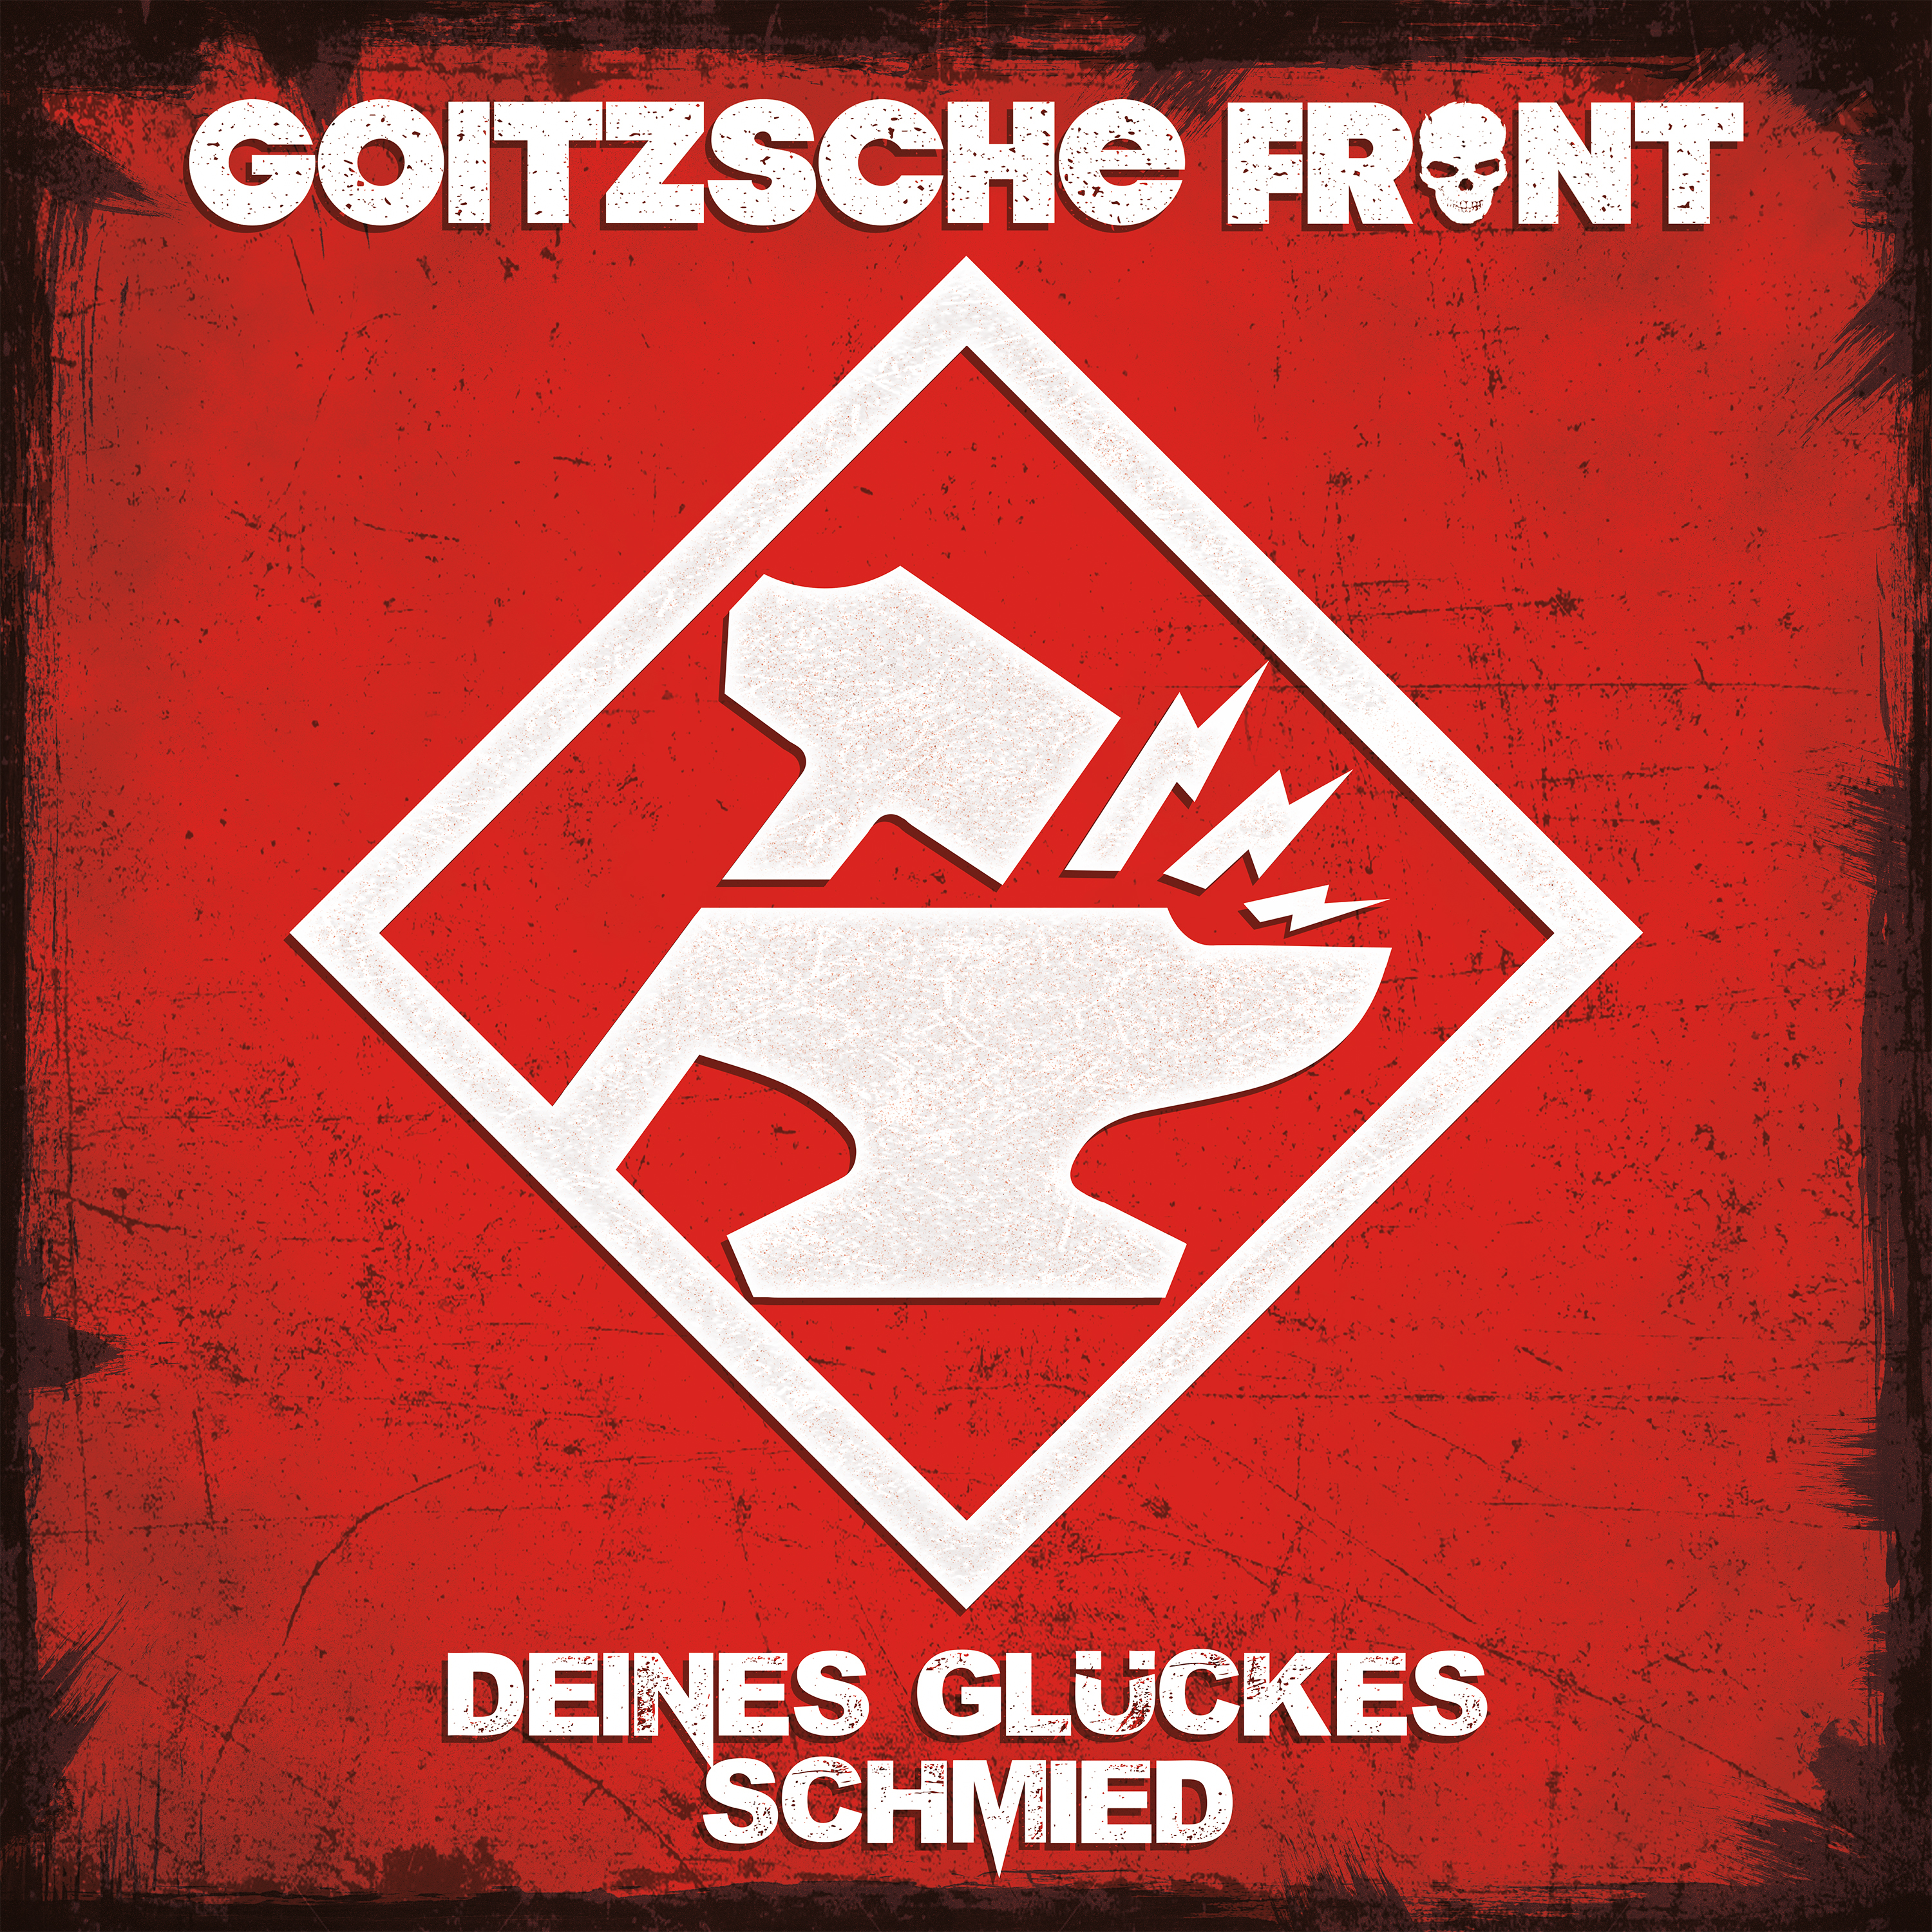 Goitzsche Front (CD) - - Deines Schmied Glückes